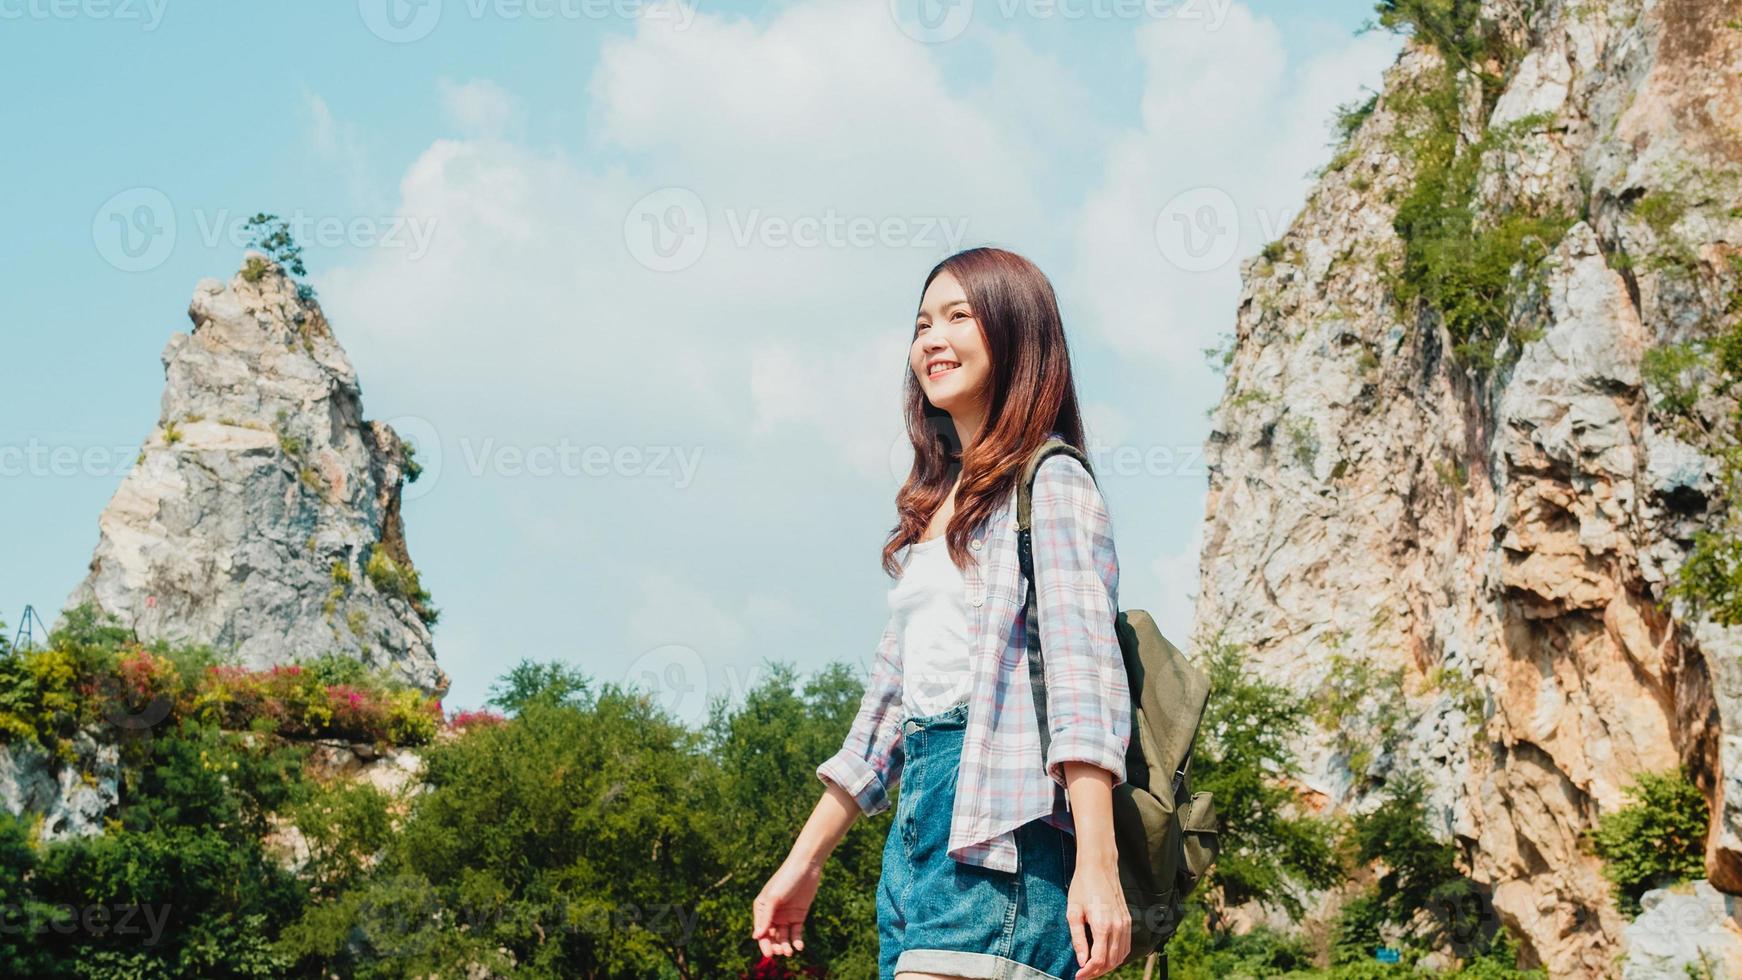 vrolijke jonge reiziger Aziatische dame met rugzak wandelen op het bergmeer. Koreaans tienermeisje geniet van haar vakantieavontuur en voelt zich gelukkig in vrijheid. levensstijl reizen en ontspannen in vrije tijd concept. foto